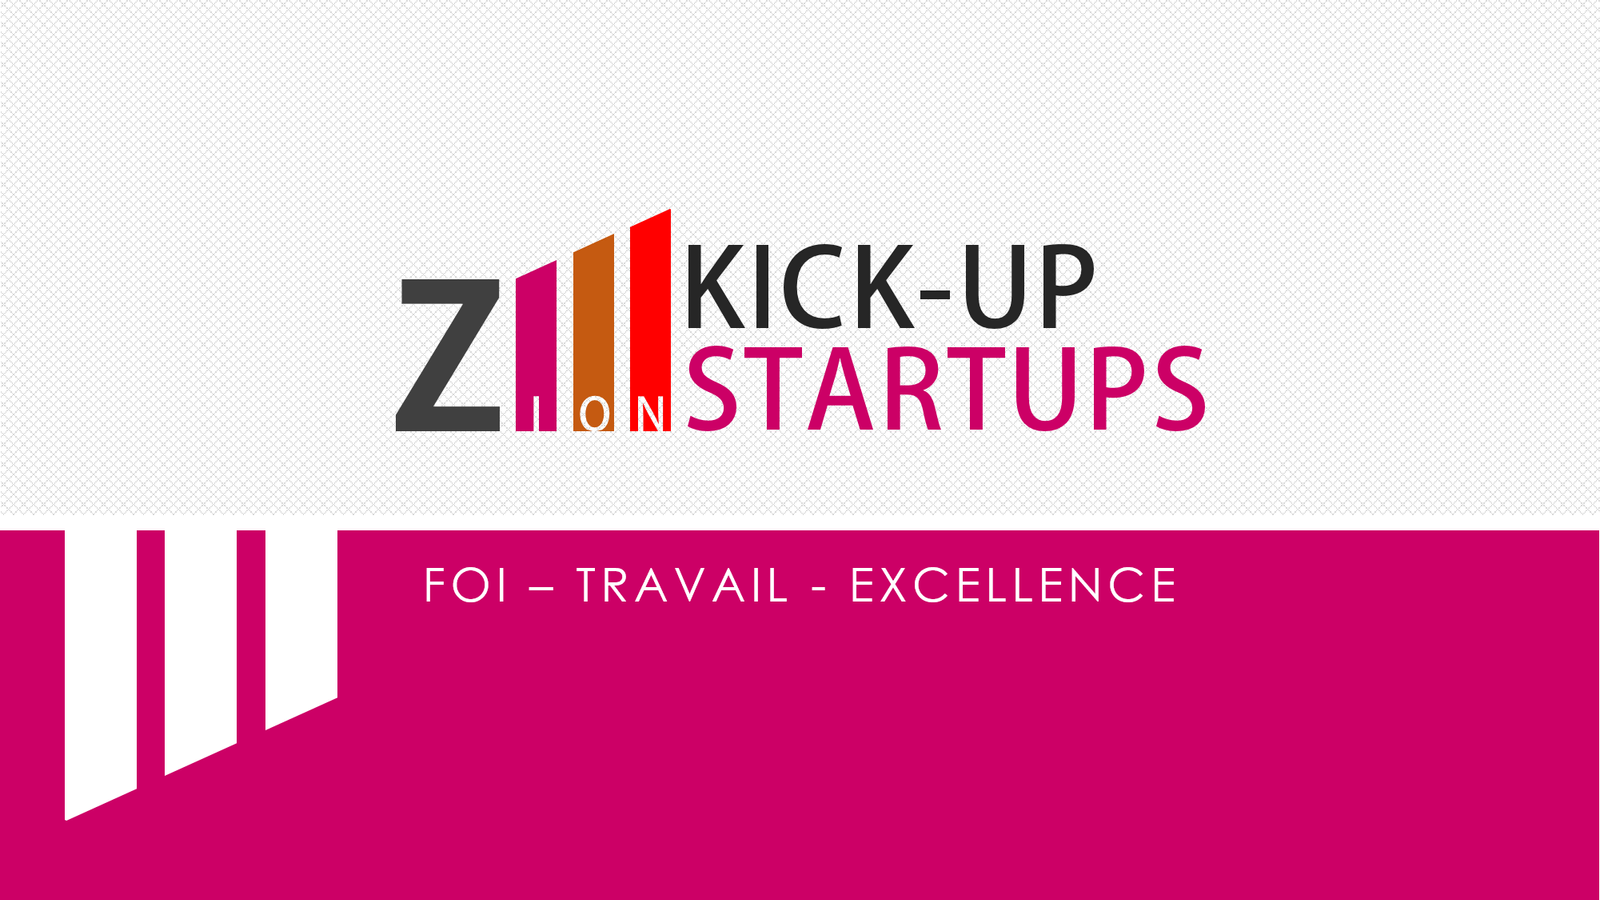 Zion Kick-up Startups